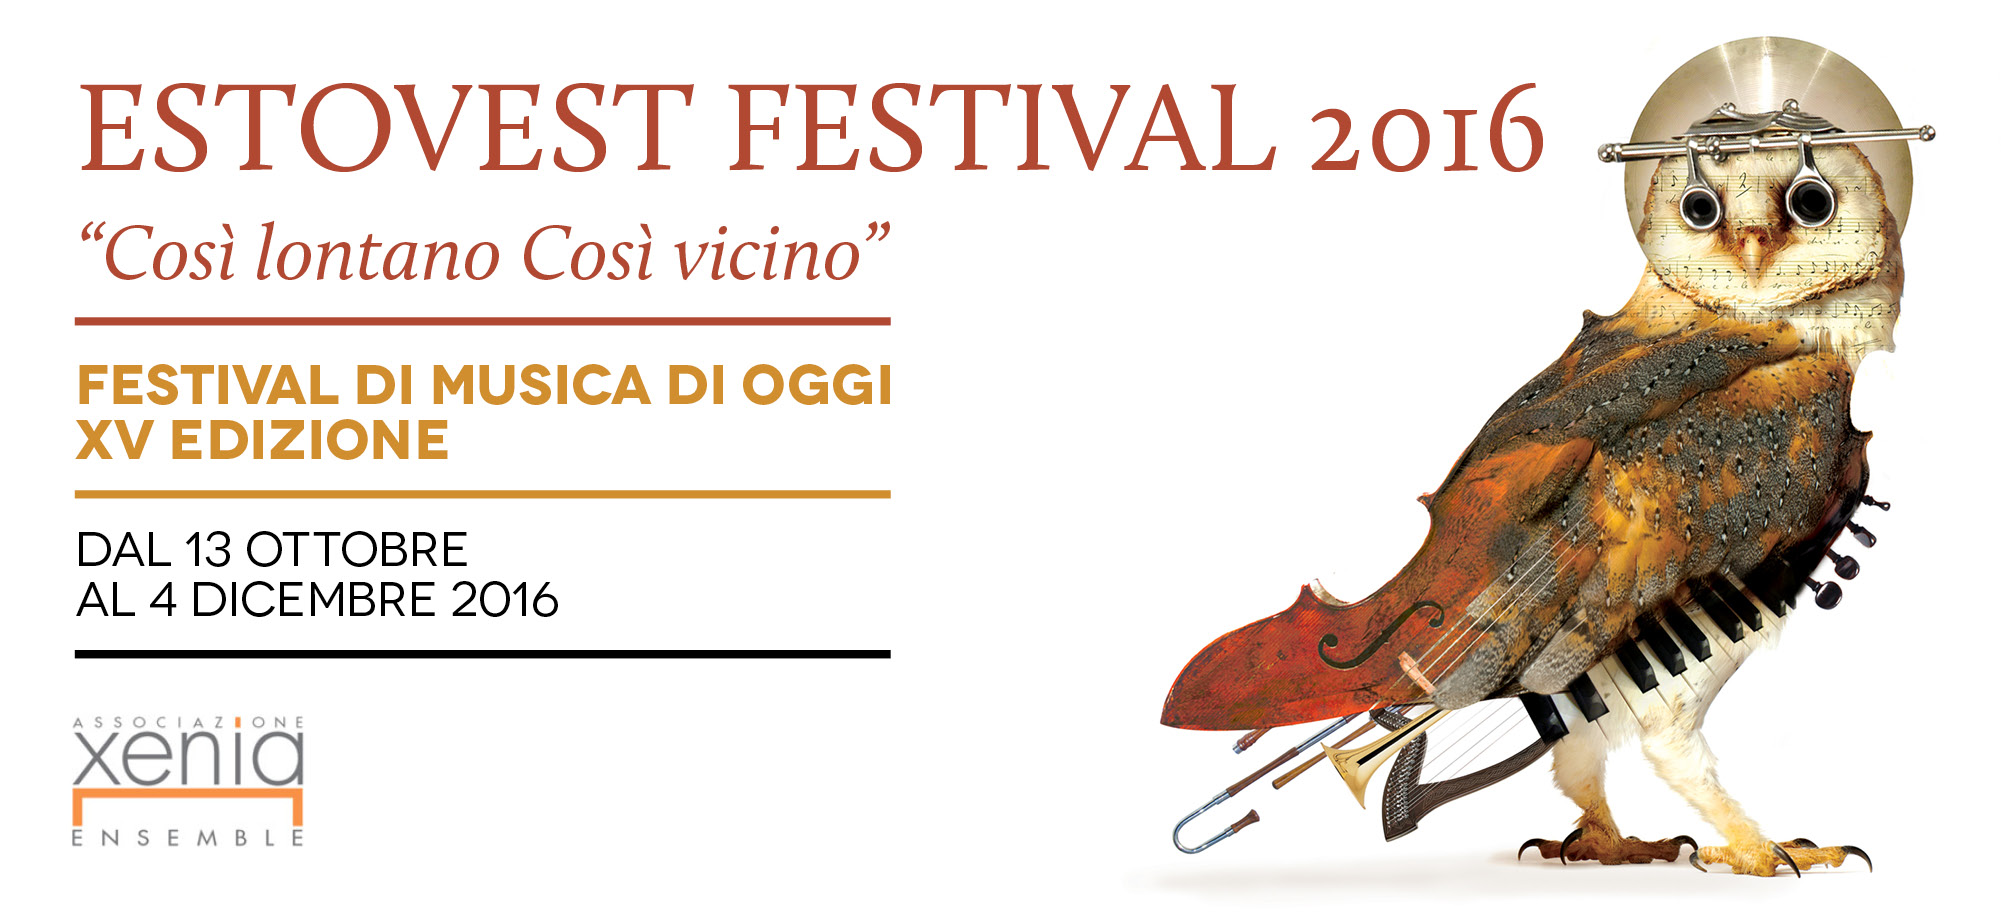 Estovest Festival, la musica in luoghi insoliti tra Piemonte e Liguria